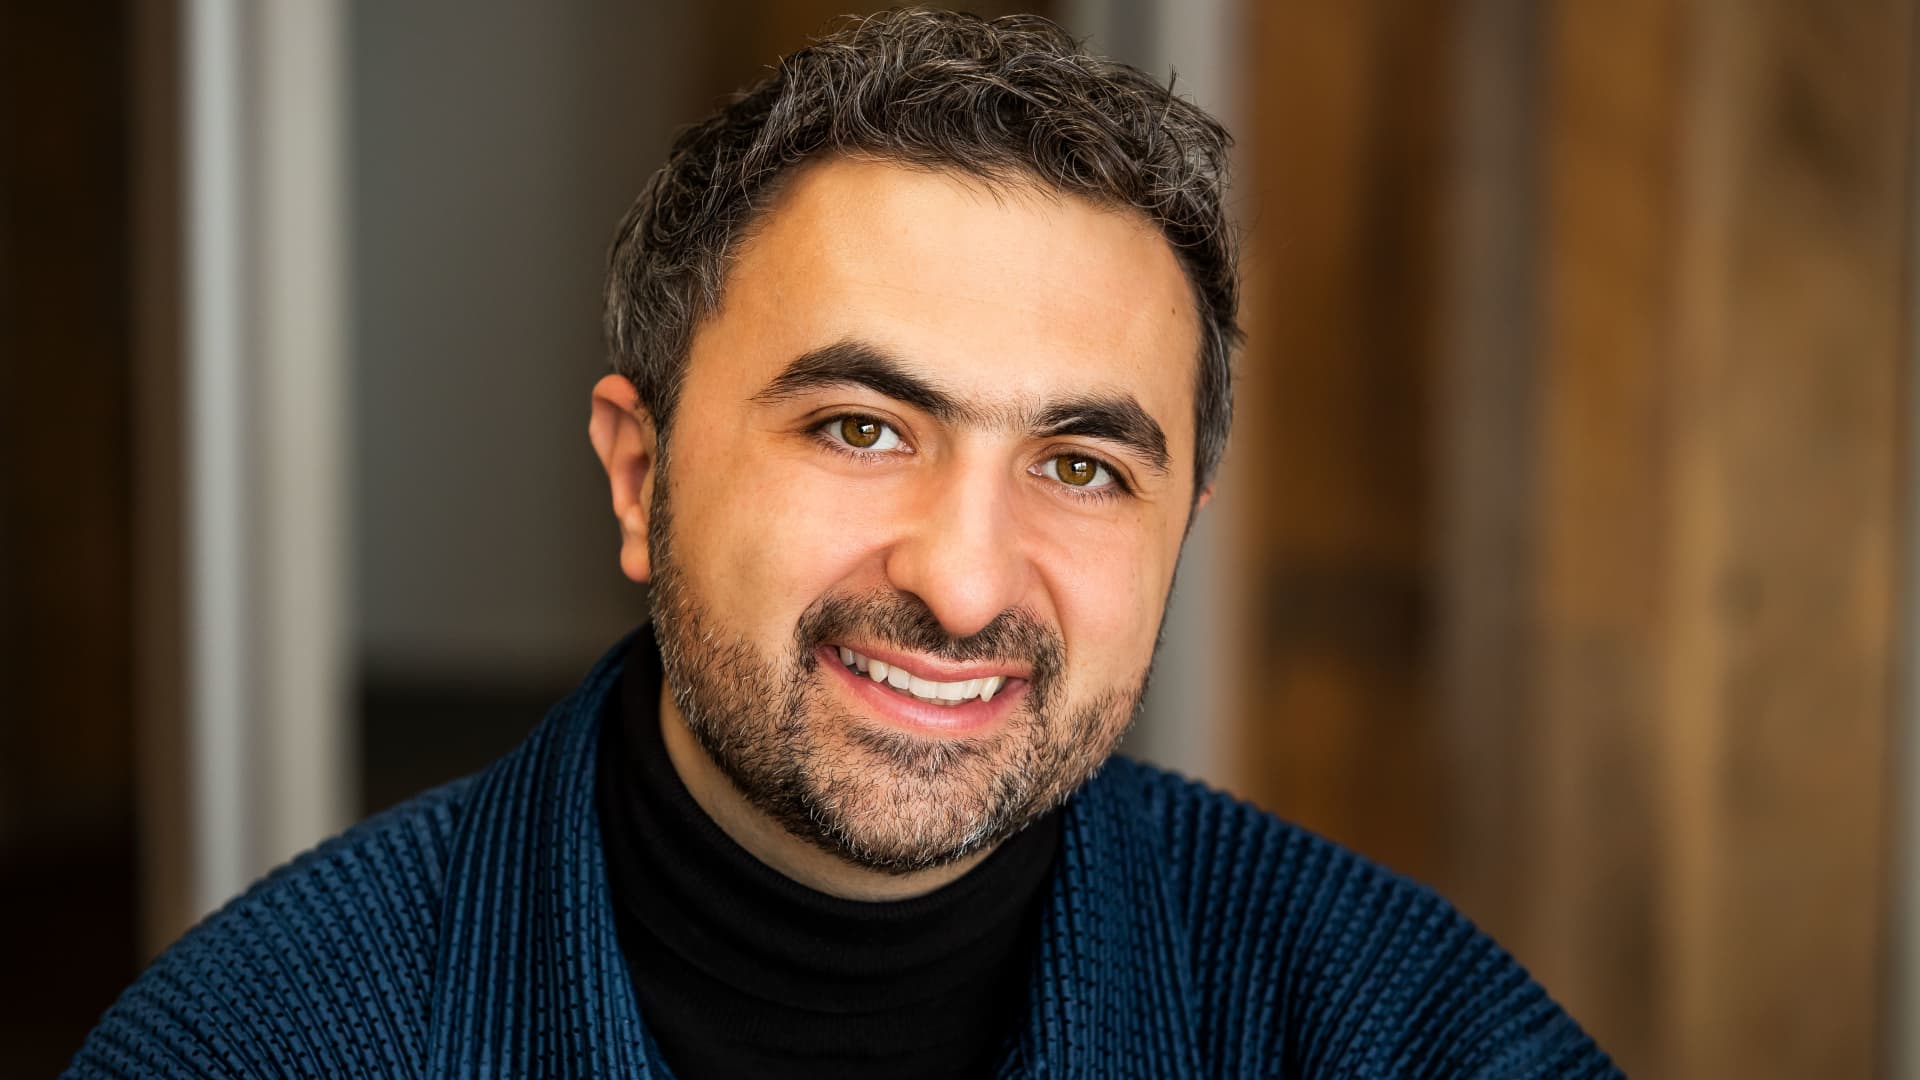 DeepMind co-founder Mustafa Suleyman